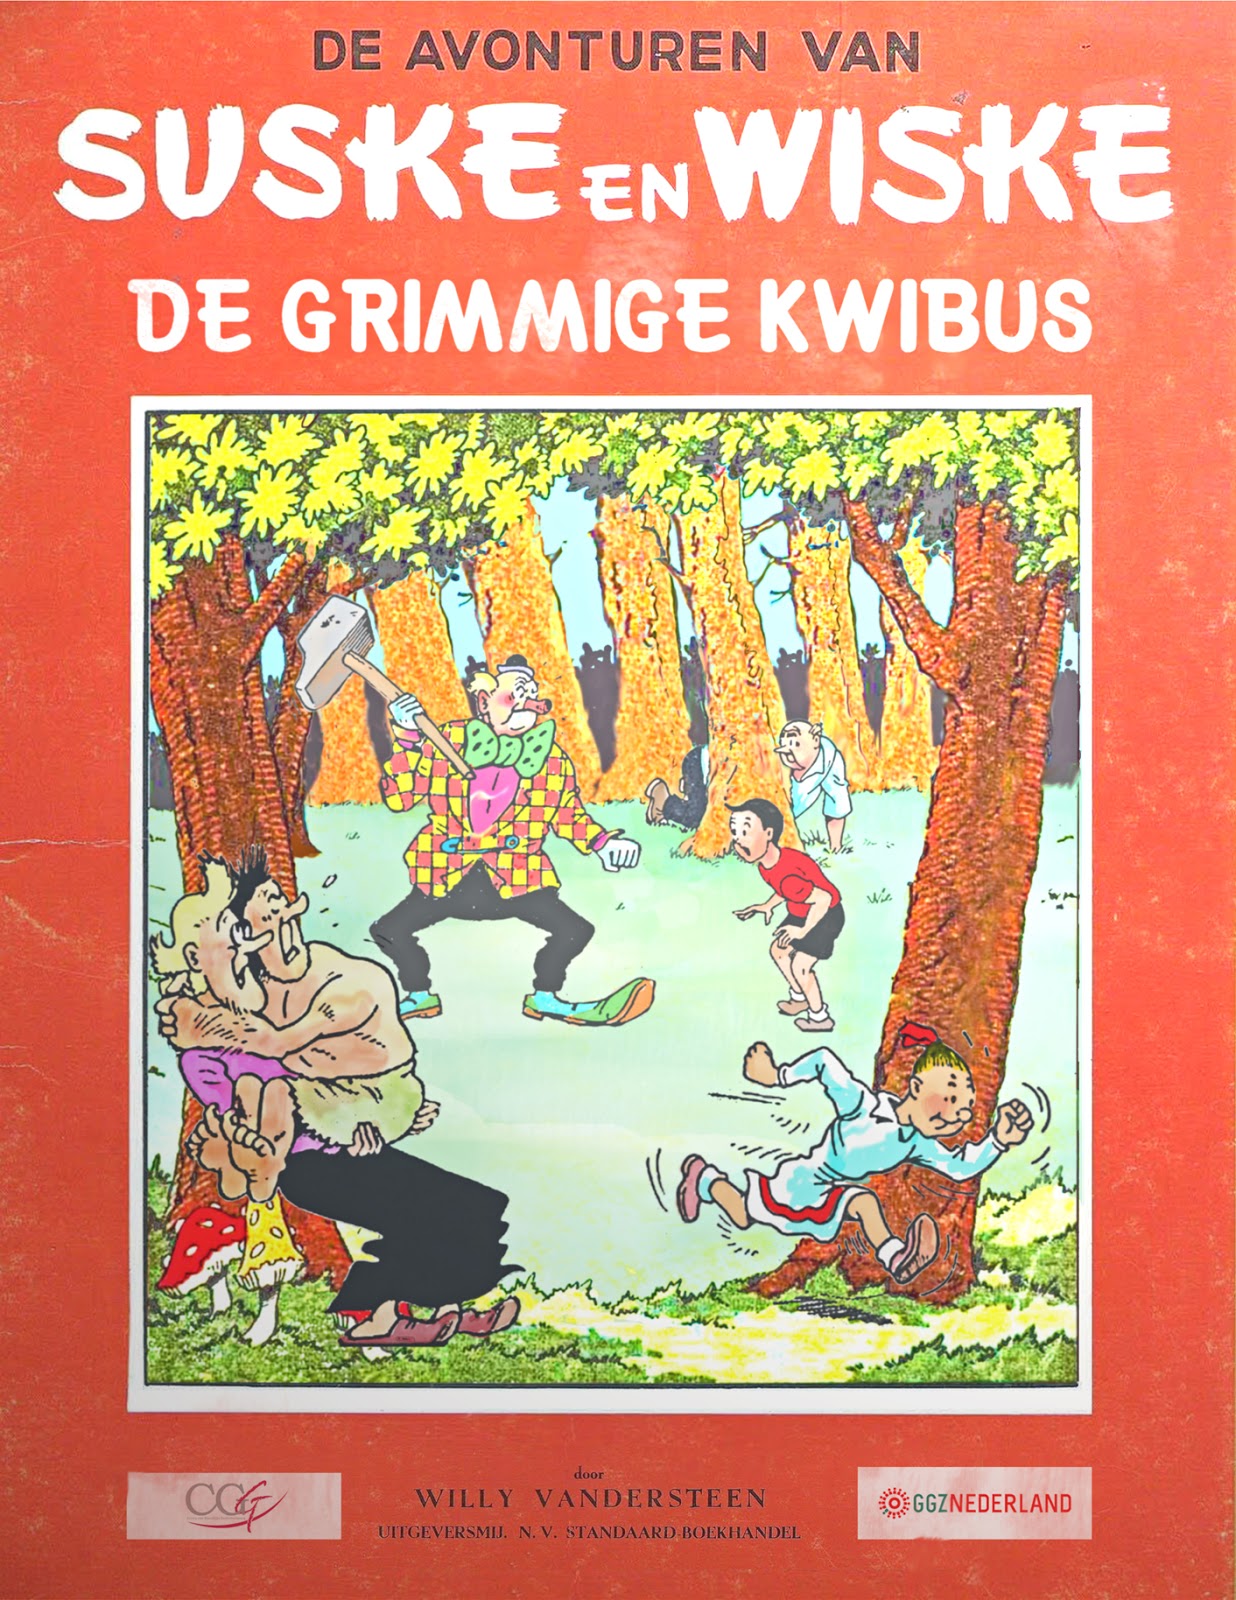 Suske&Wiske-De Grimmige Kwibus-Eind versie-Uitgave ggz ccg-KLein (474K)